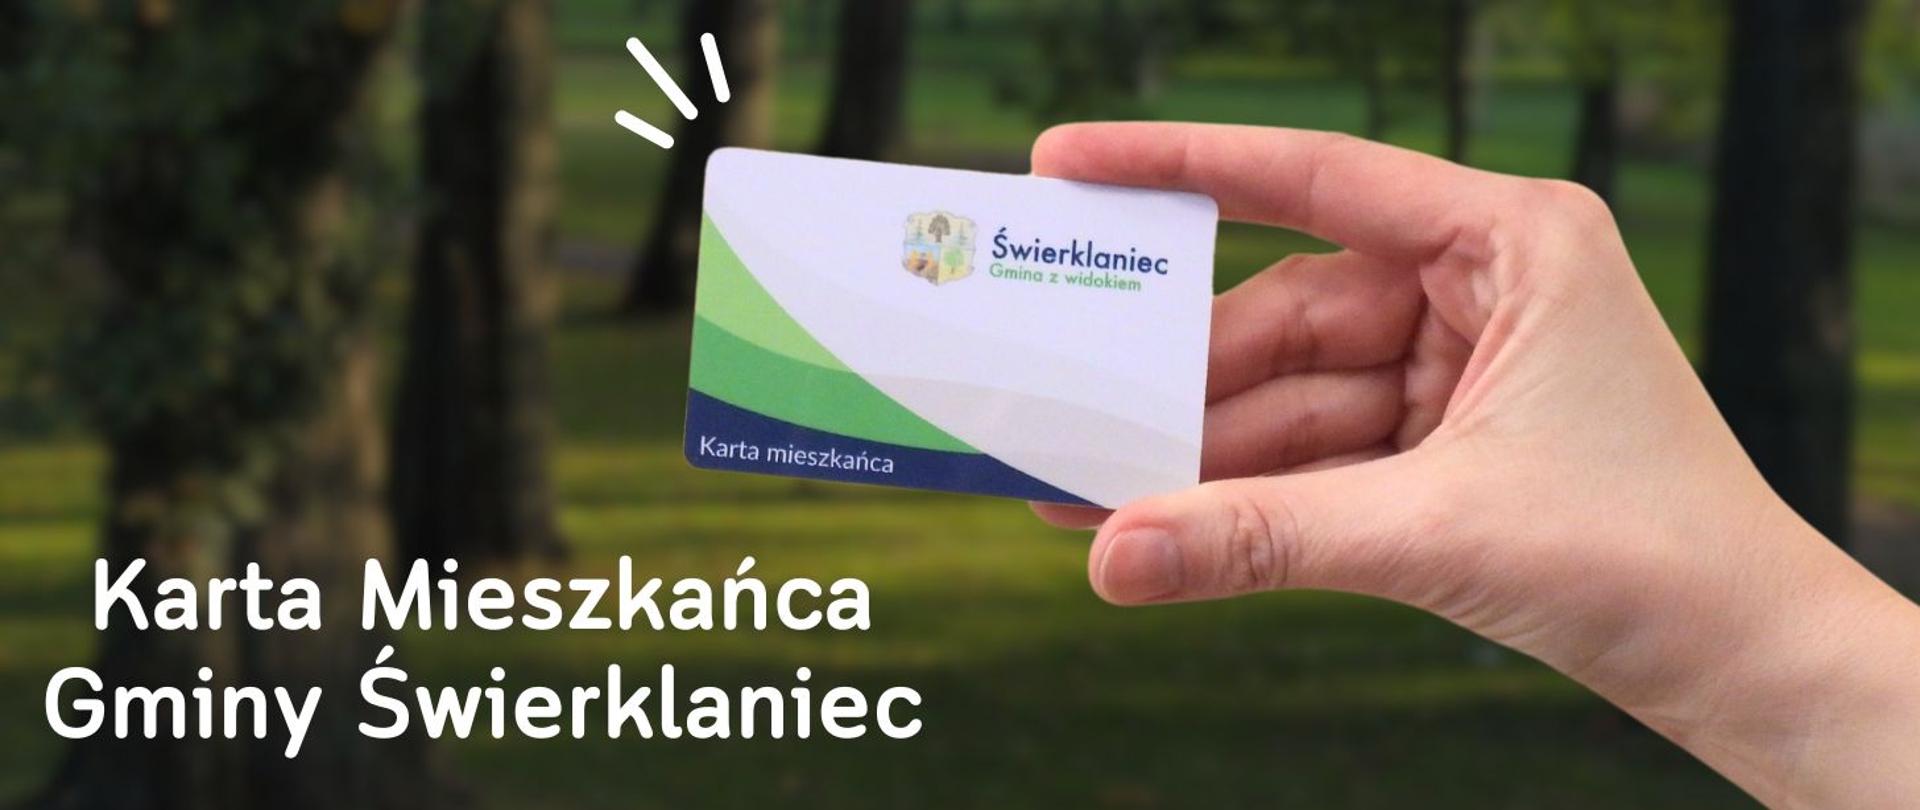 Kobieca dłoń trzyma kartę wielkości karty bankomatowej, to na tle parku z drzewami i zieloną trawą